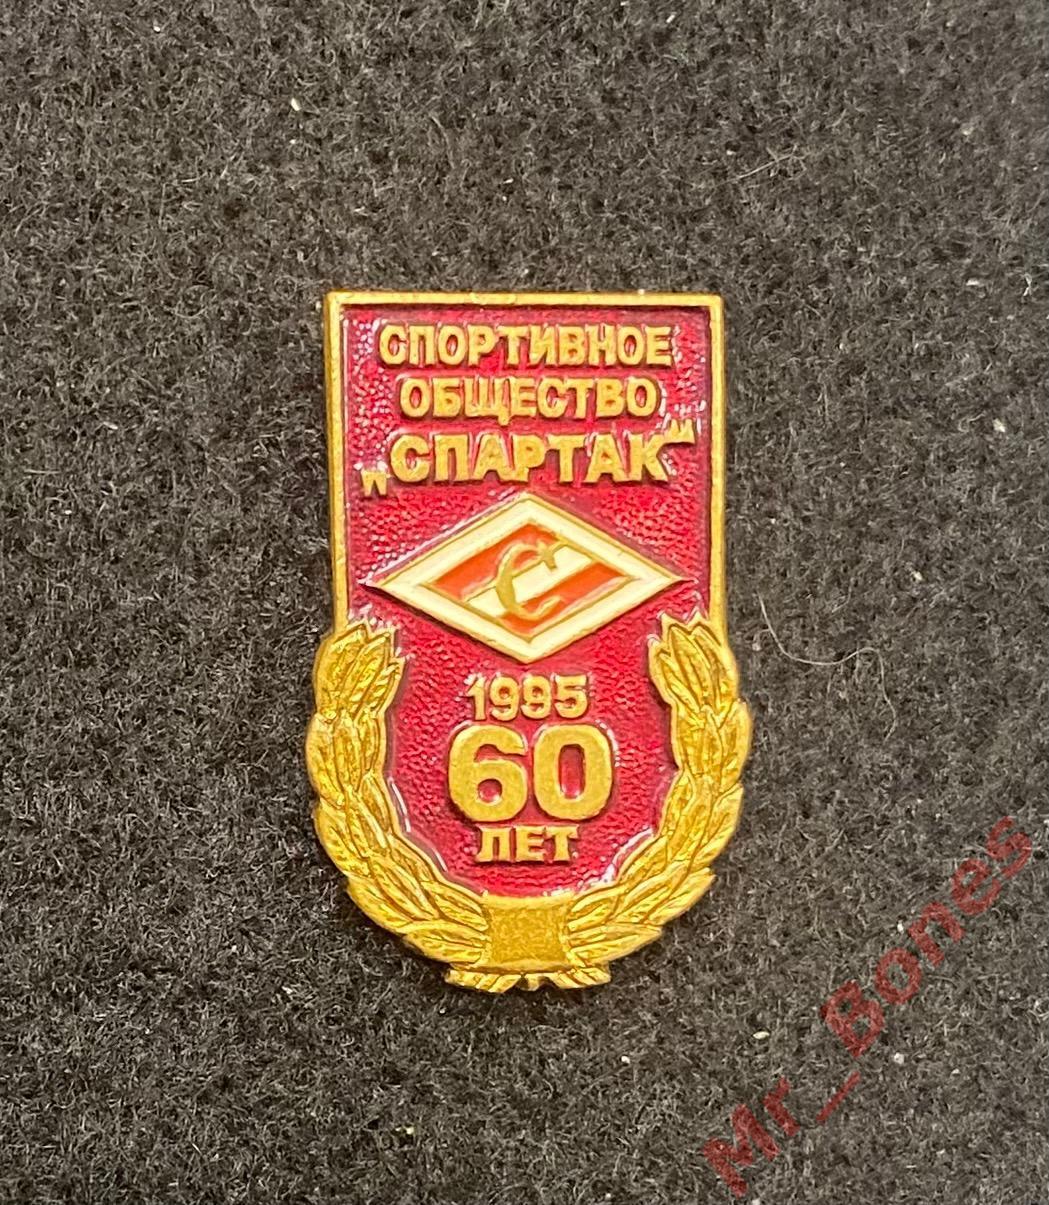 ДСО Спартак - 60 лет (1935-1995)